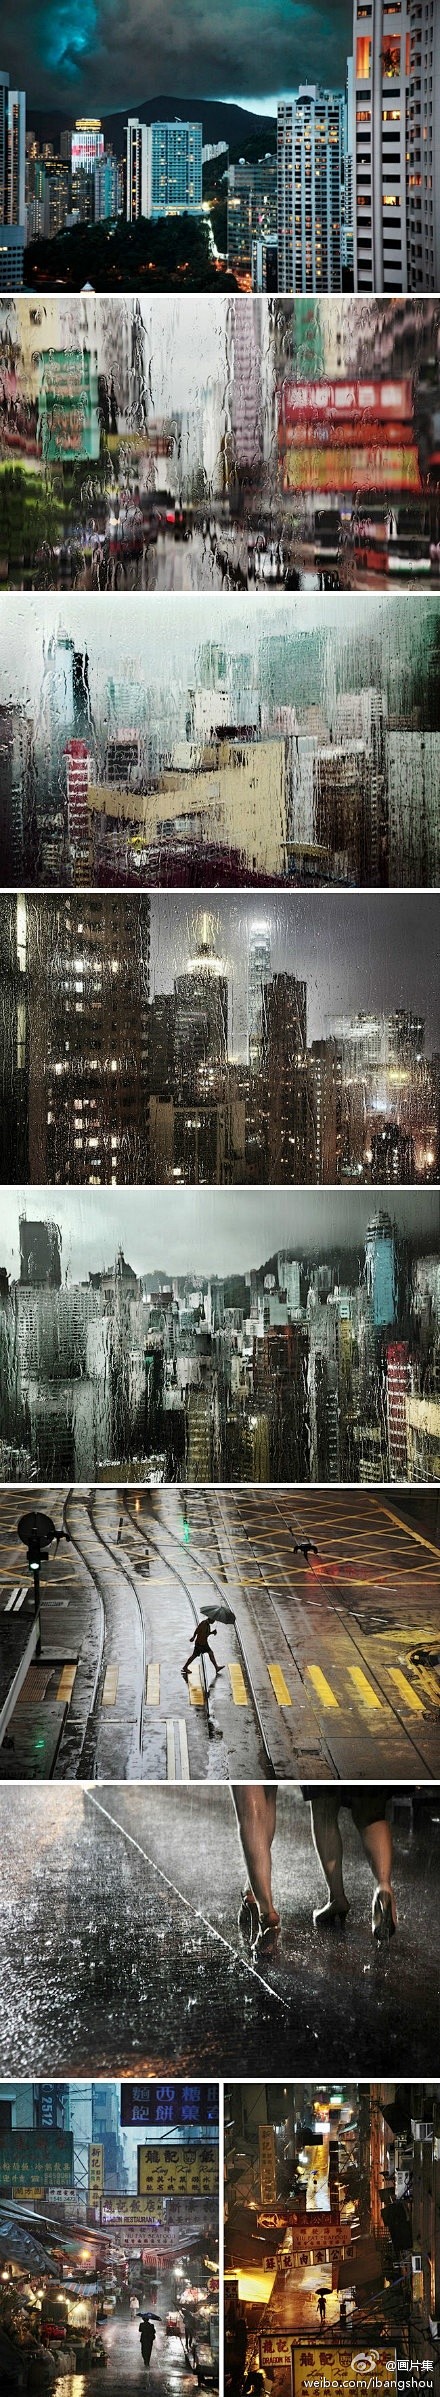 雨中香港，这些稍纵即逝的瞬间尤为美丽动人...